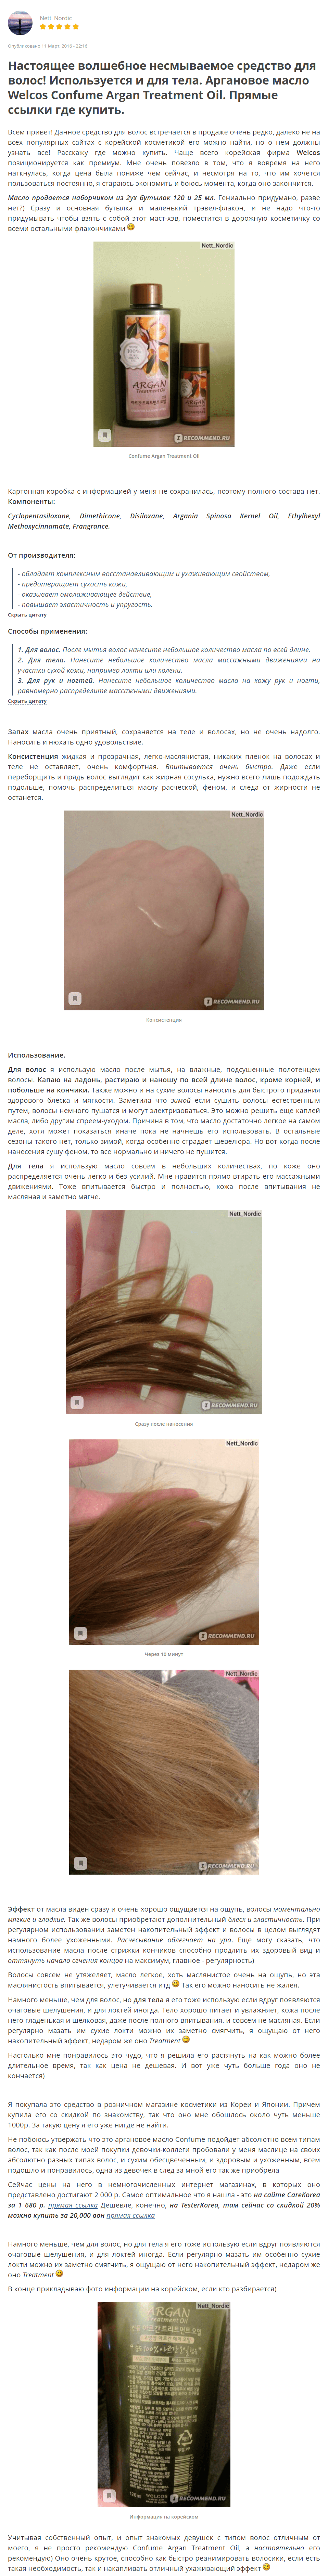 Confume Argan Treatment Oil Hair&Body [Welcos] отзыв 1 (1)